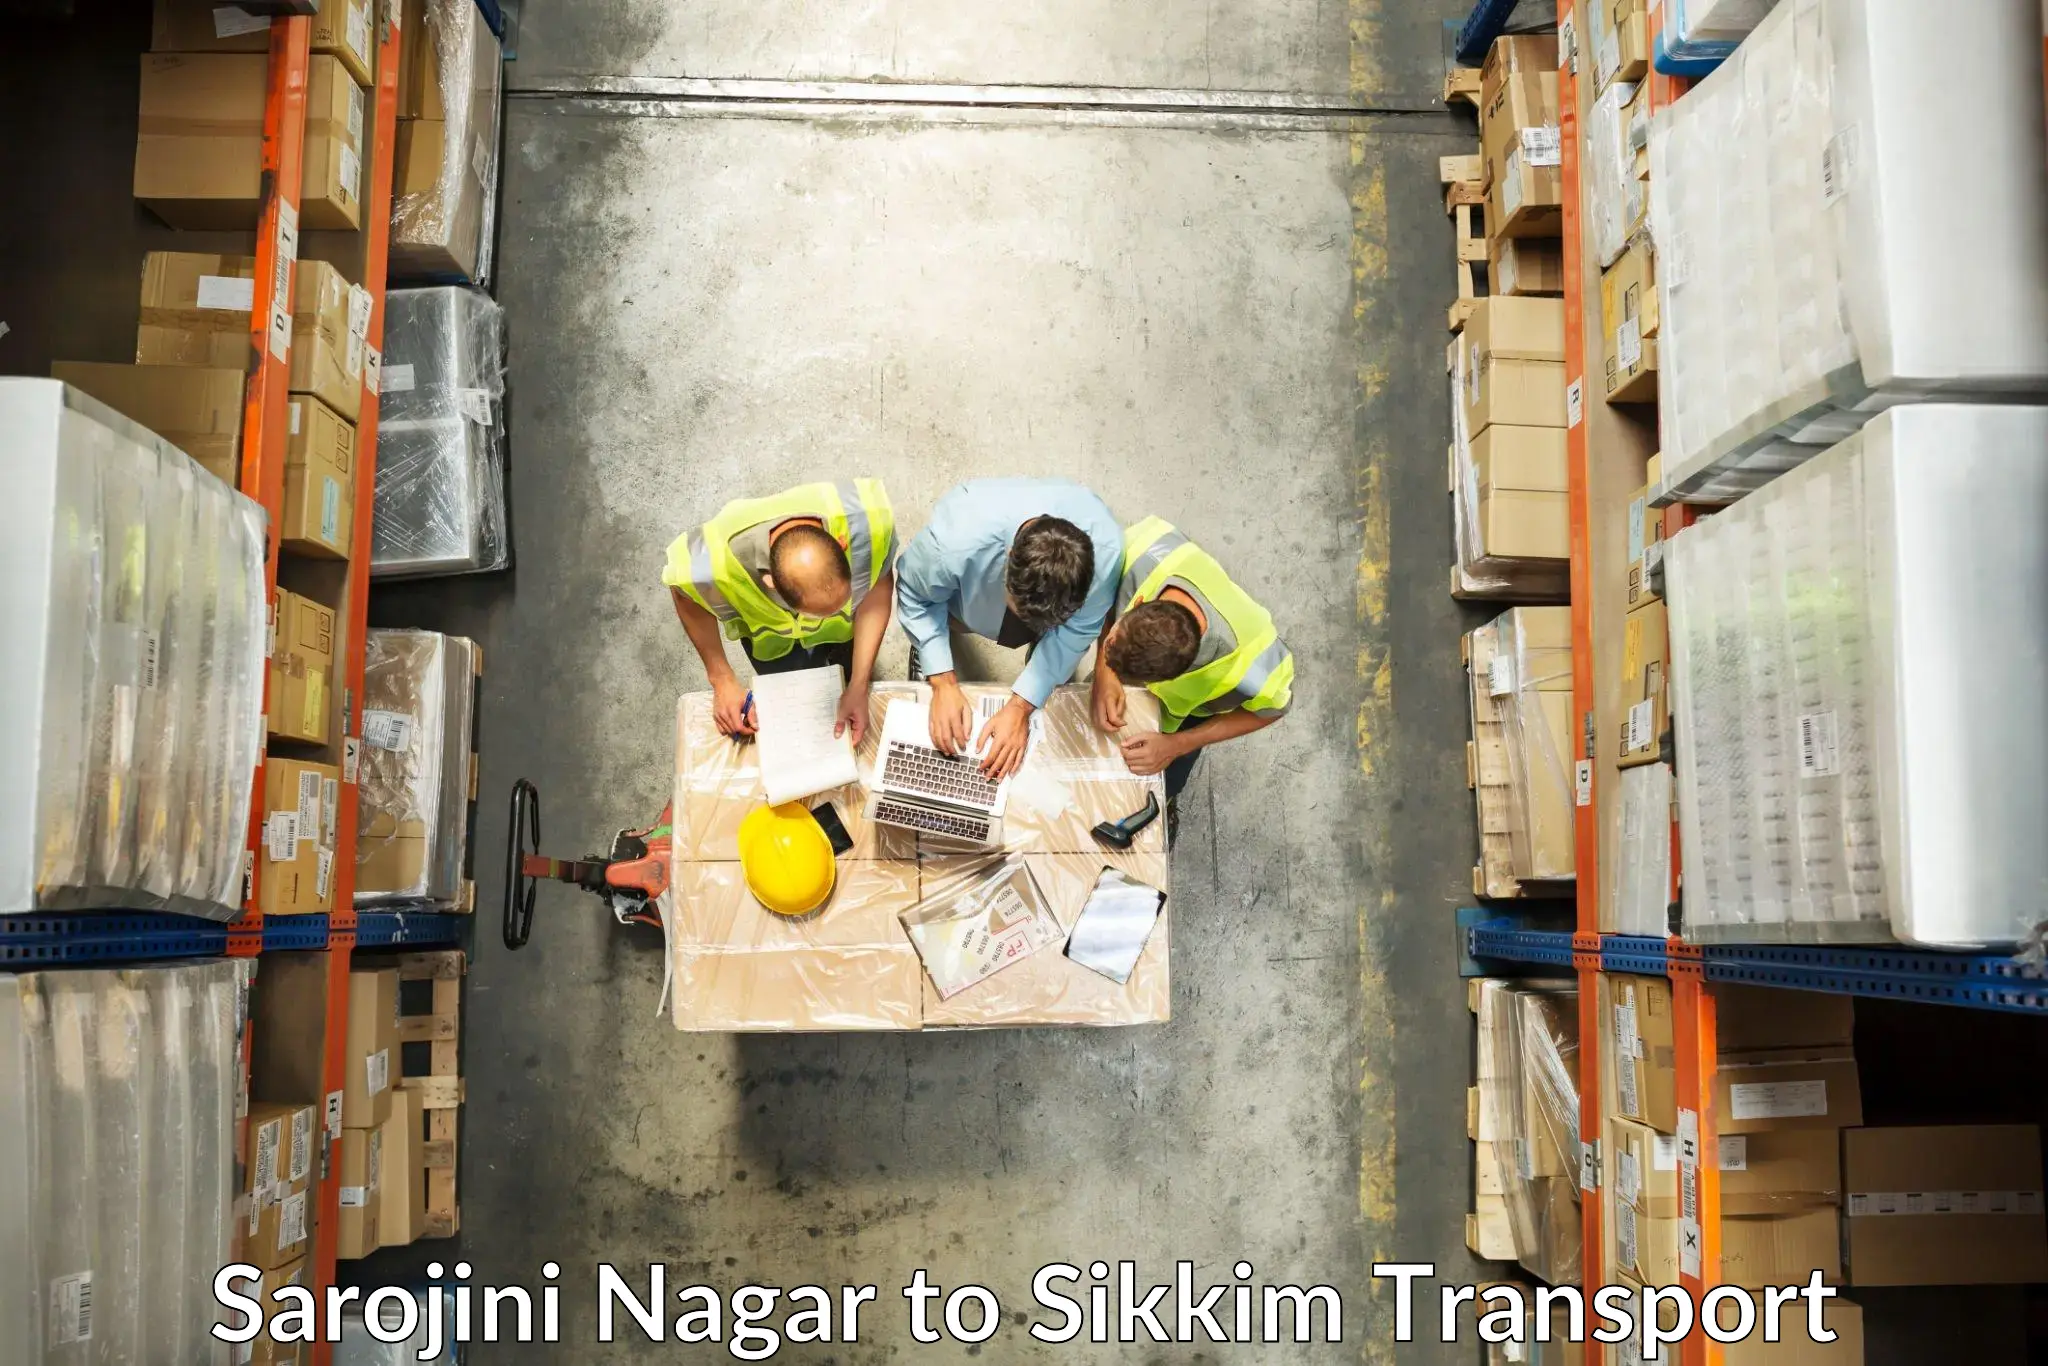 Lorry transport service Sarojini Nagar to Sikkim